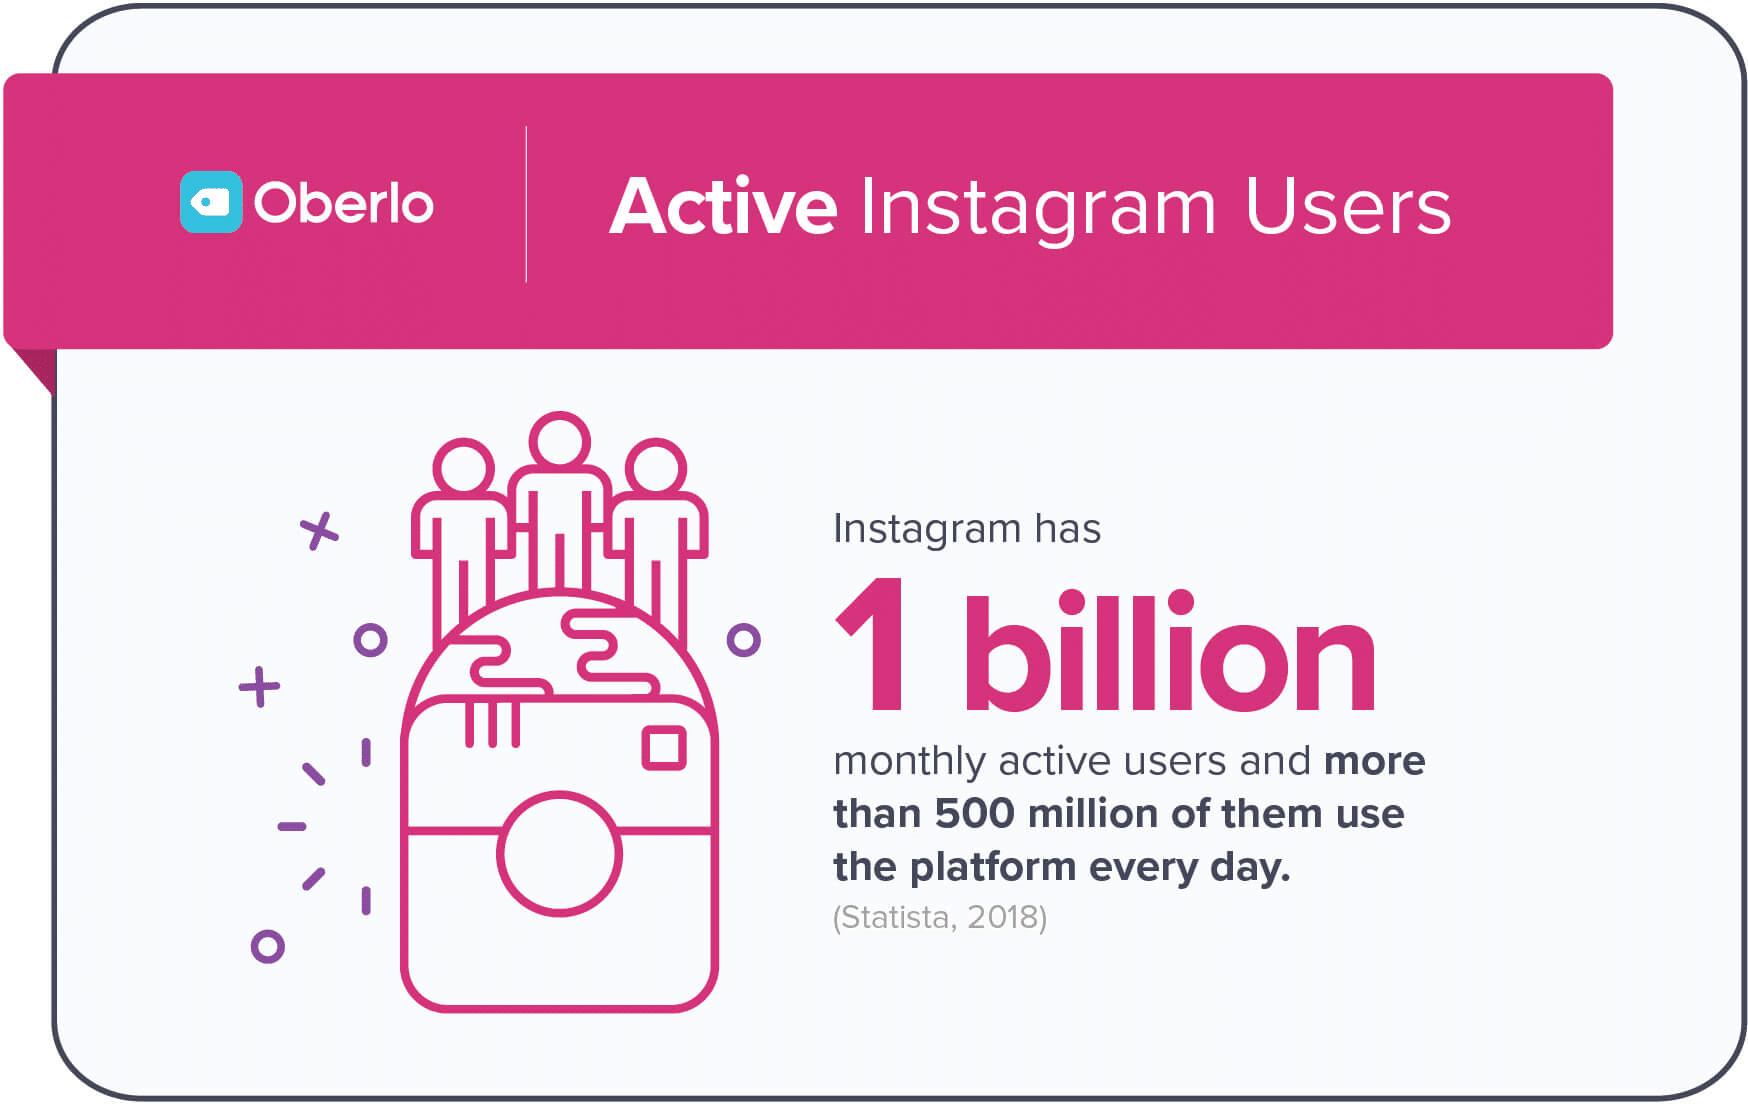 Oberlo Instagram Statistic